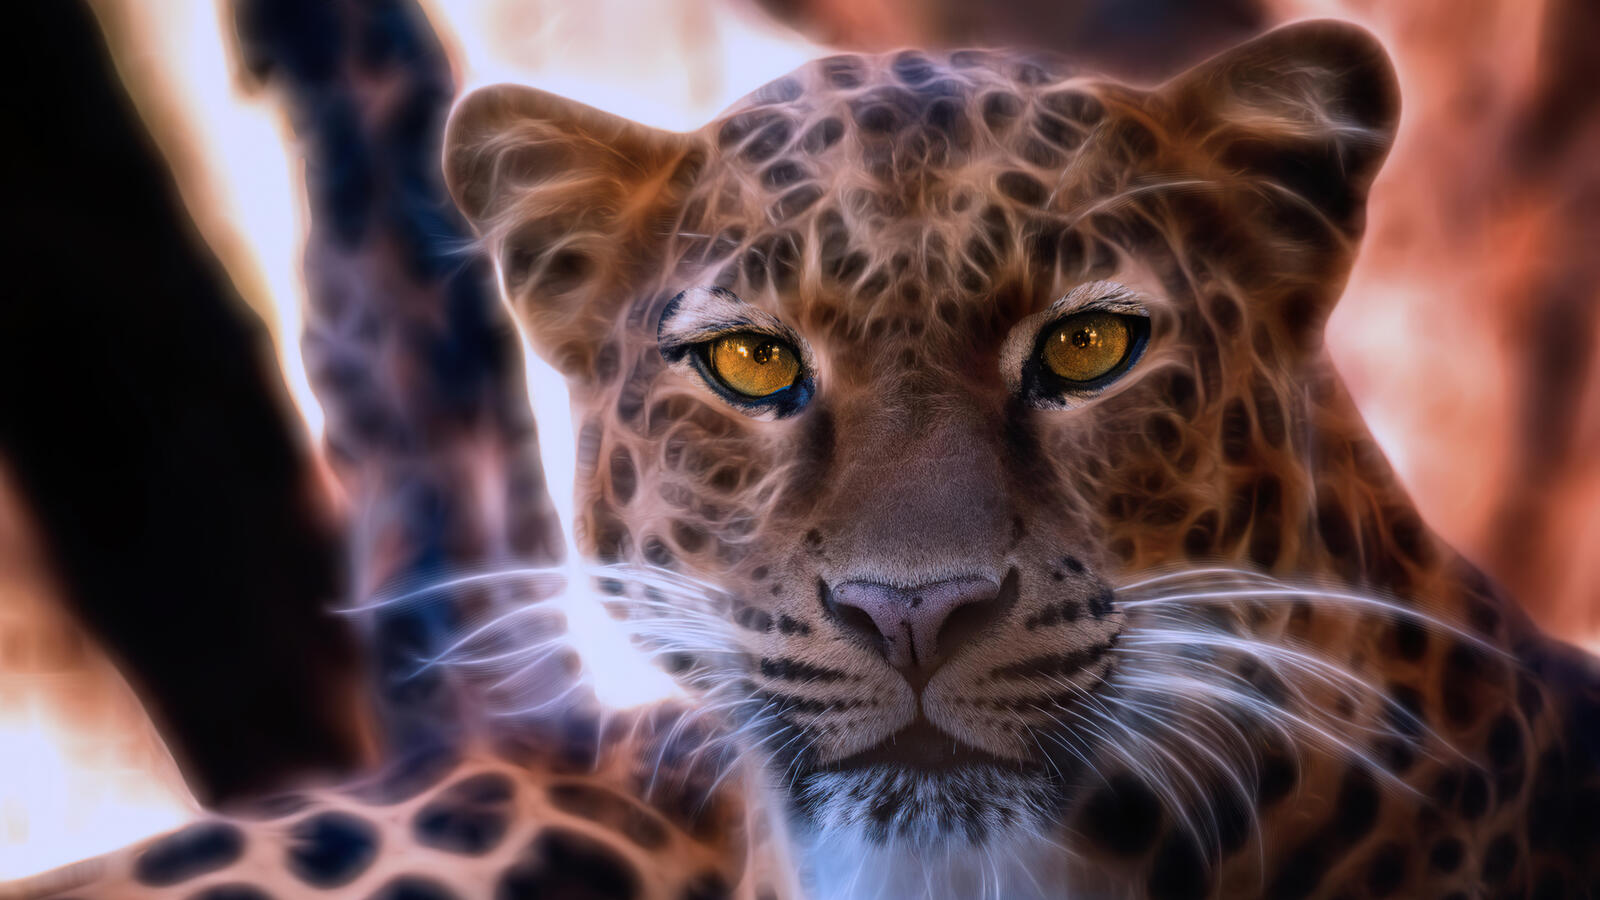 Wallpapers leopard animals rendering on the desktop